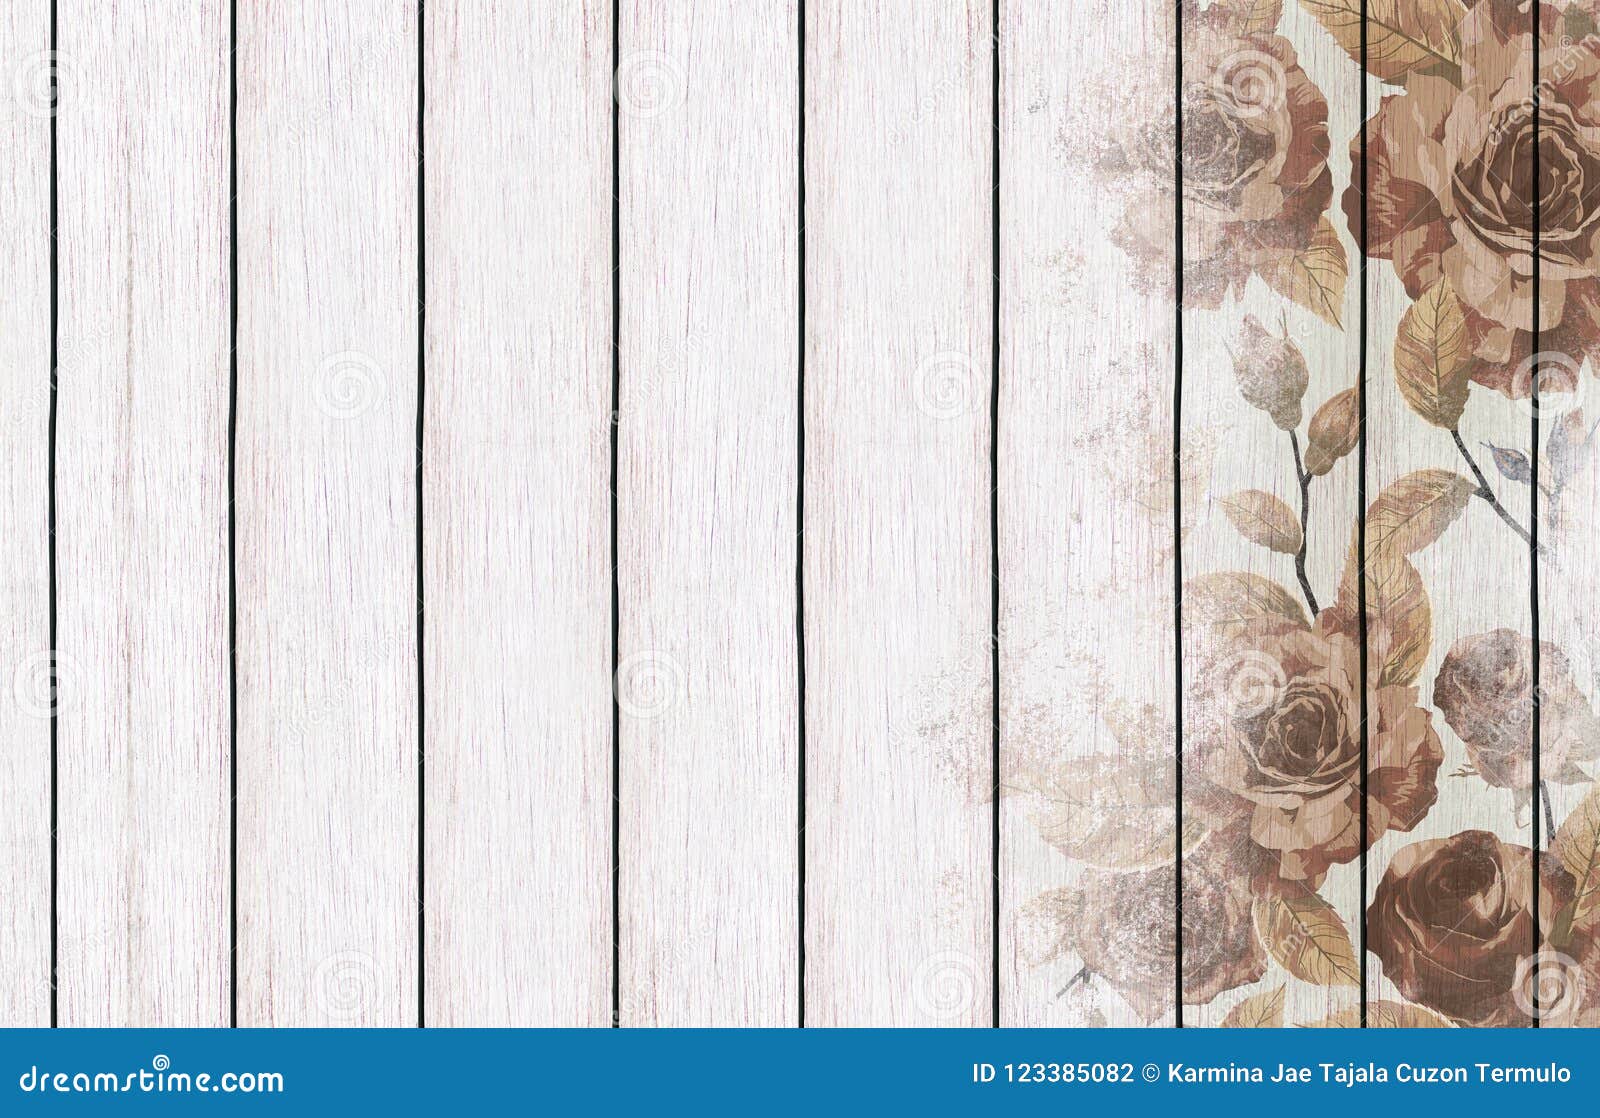 Nền giấy dán tường gỗ sơn hoa văn đem đến cho ngôi nhà của bạn sự hiện đại và trang trọng. Với hoa văn tinh tế, nó sẽ làm cho không gian sống của bạn trở thành một bức tranh tuyệt đẹp.